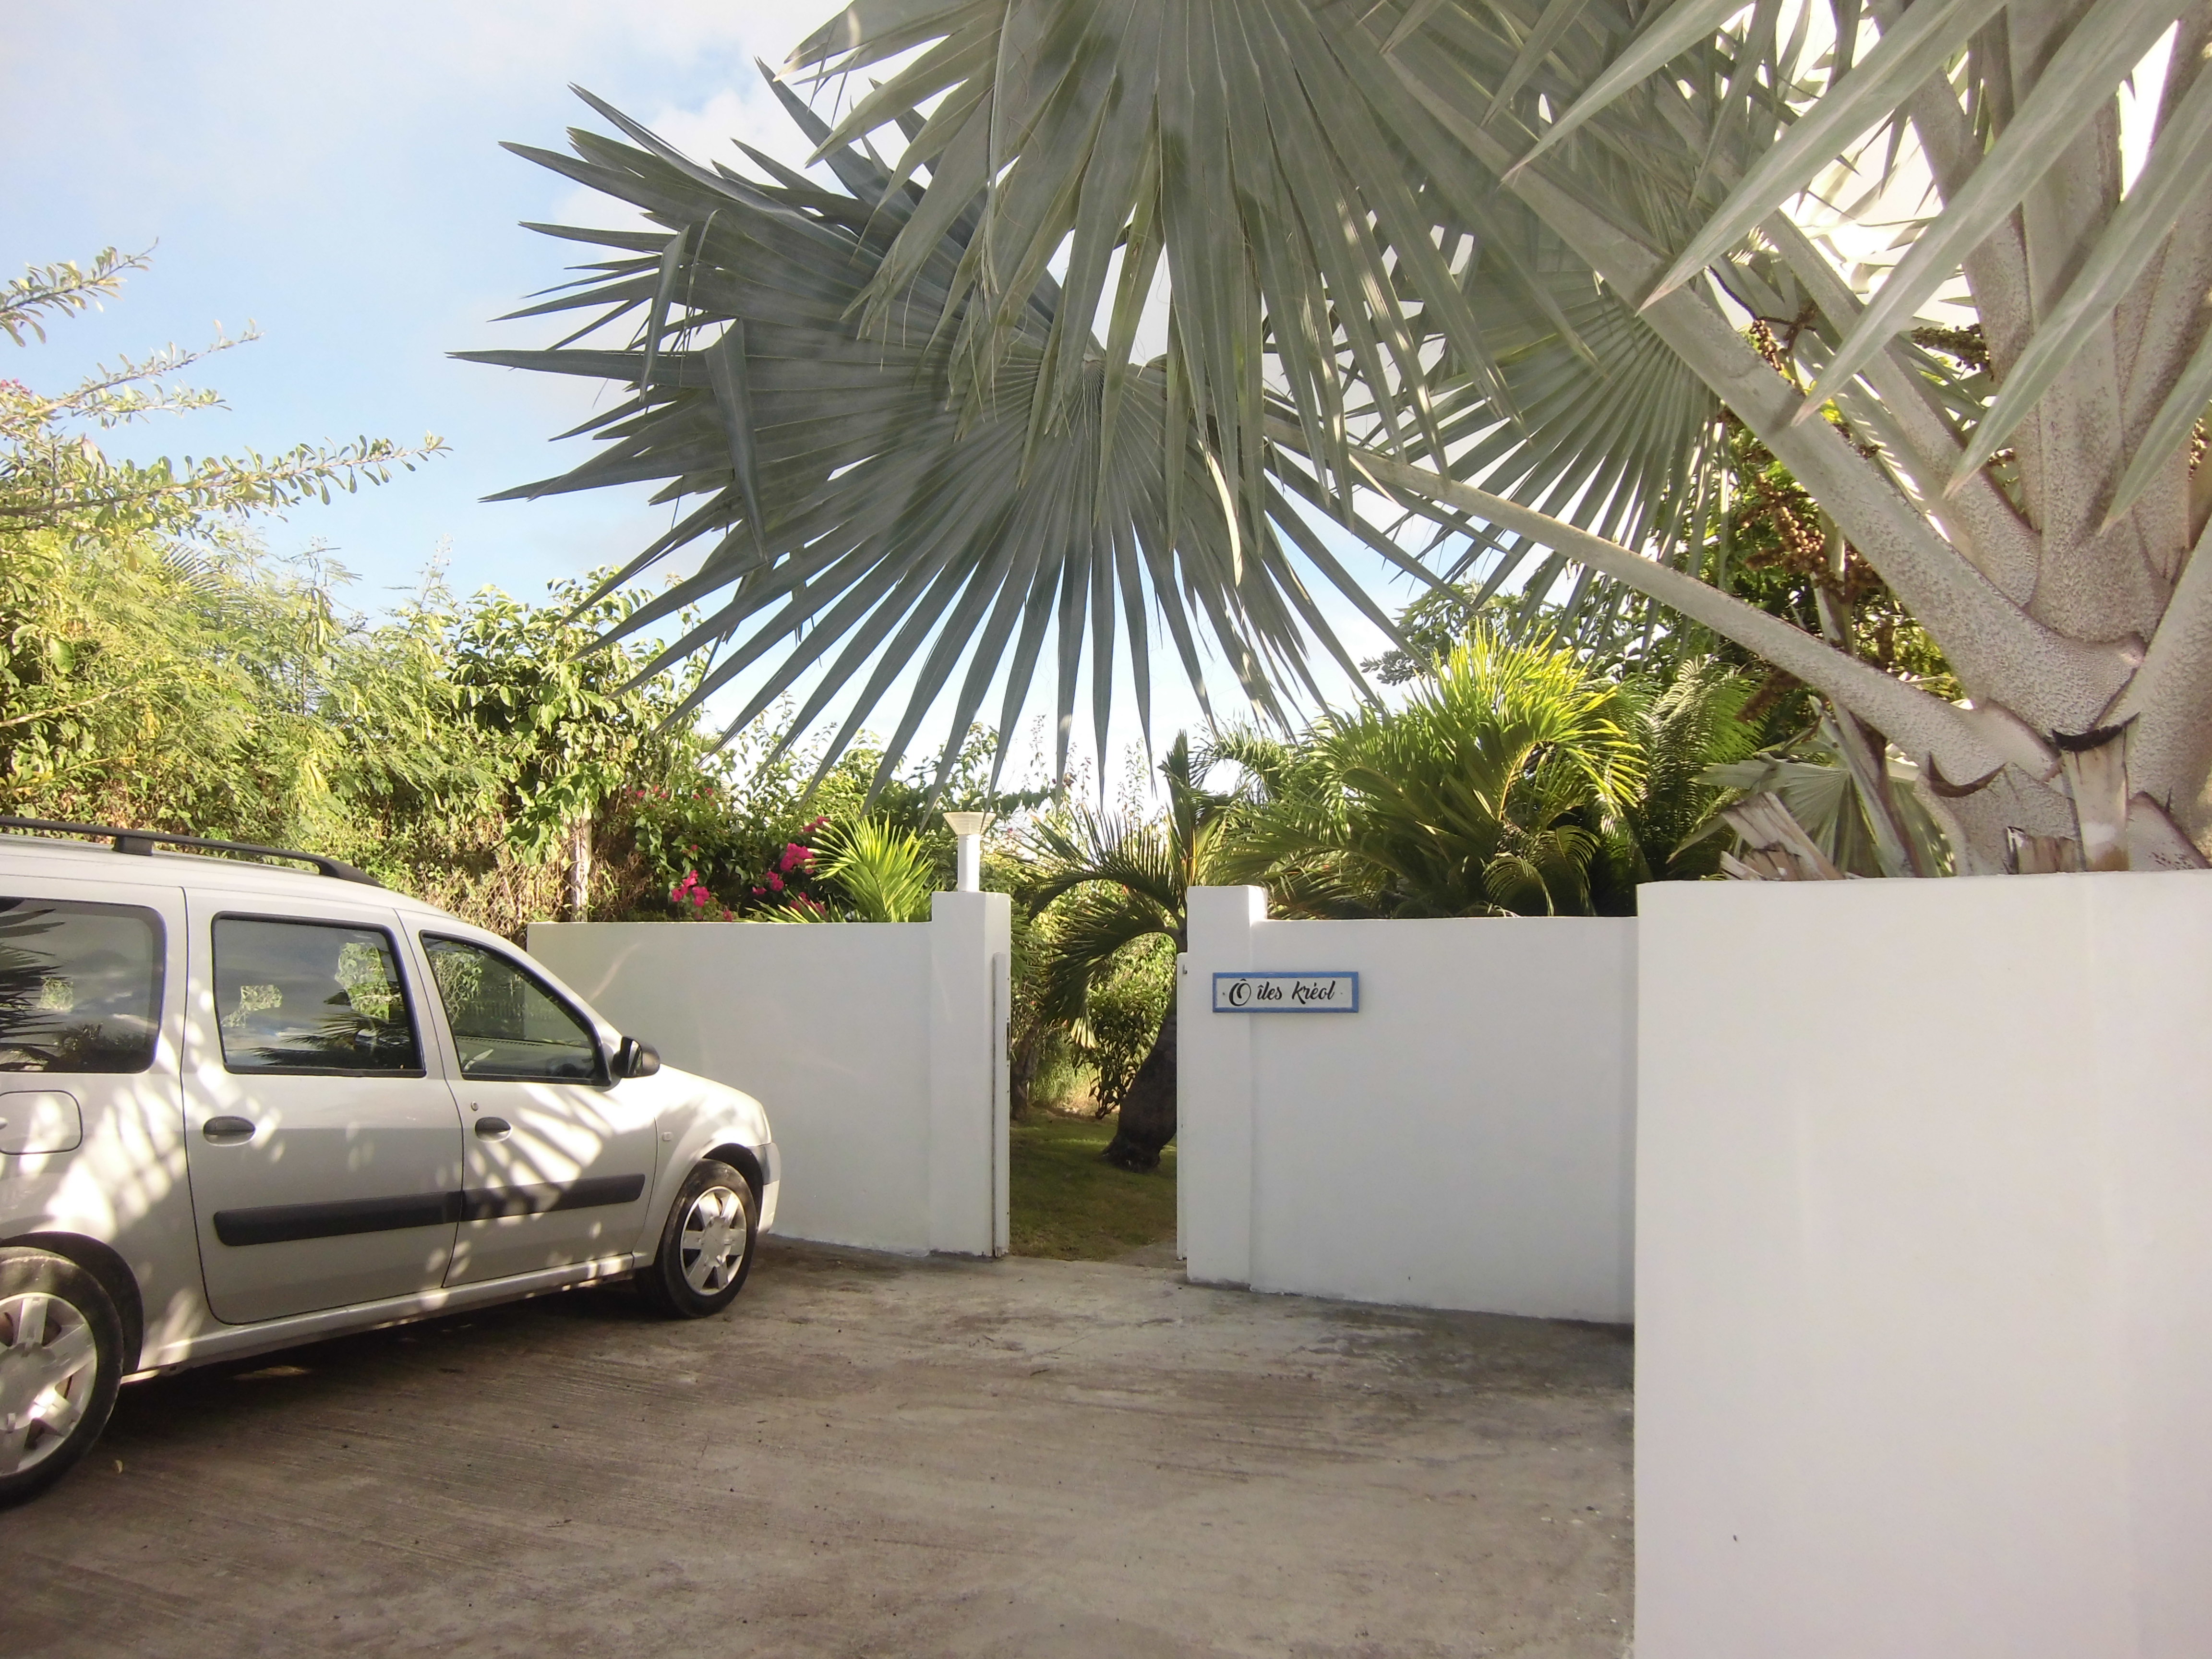 Location, Saint-François, gite, Guadeloupe, vacances, bungalow, villa luxe